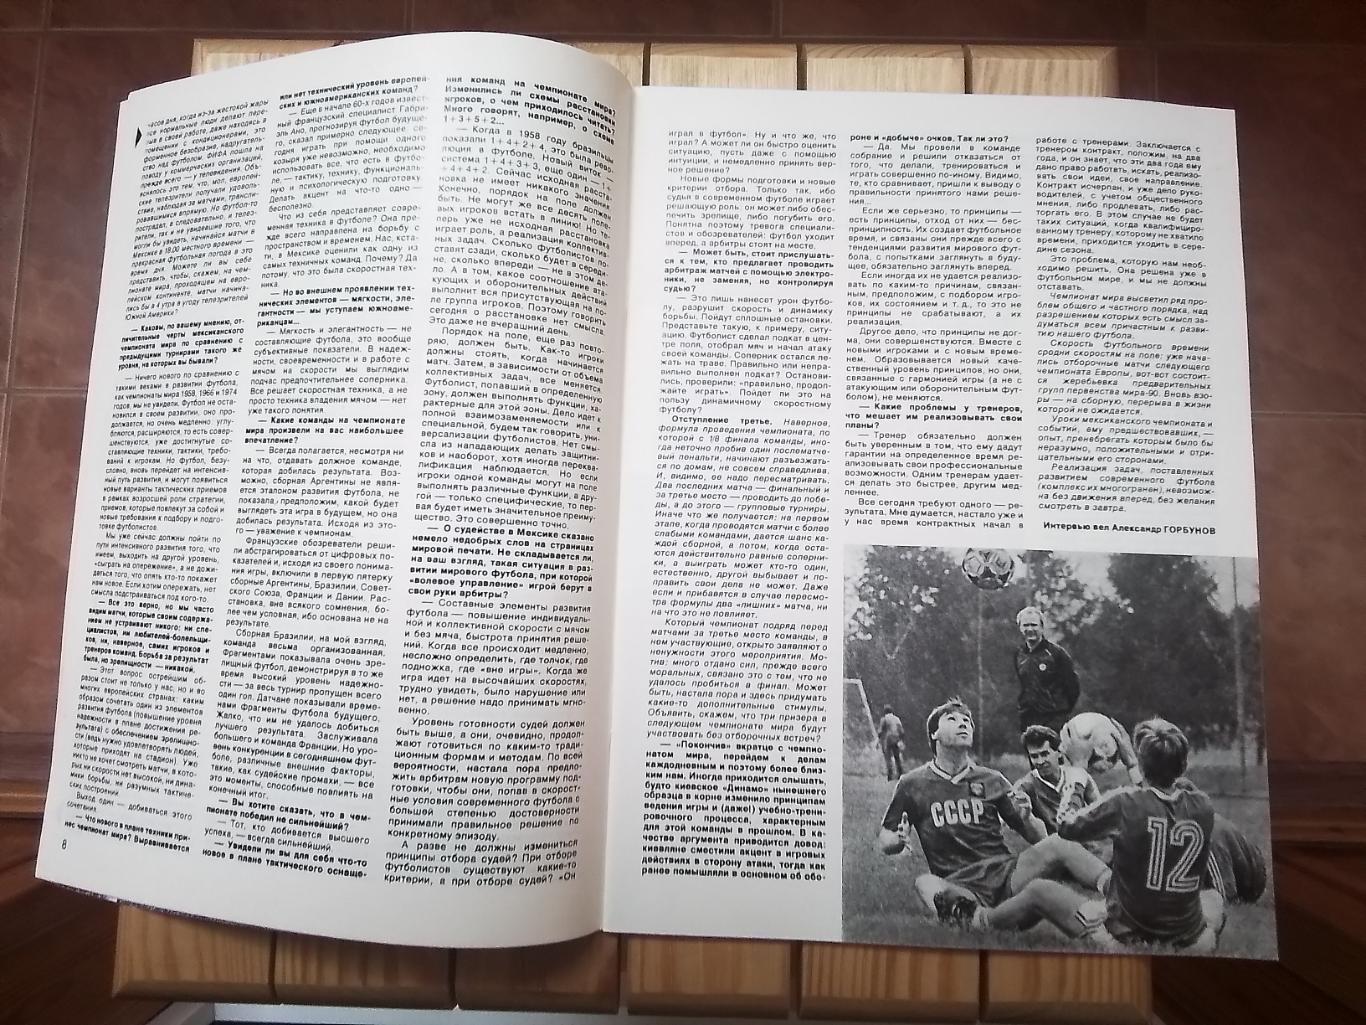 Журнал Спортивные игры N 10 1986 Беланов Динамо Киев 7